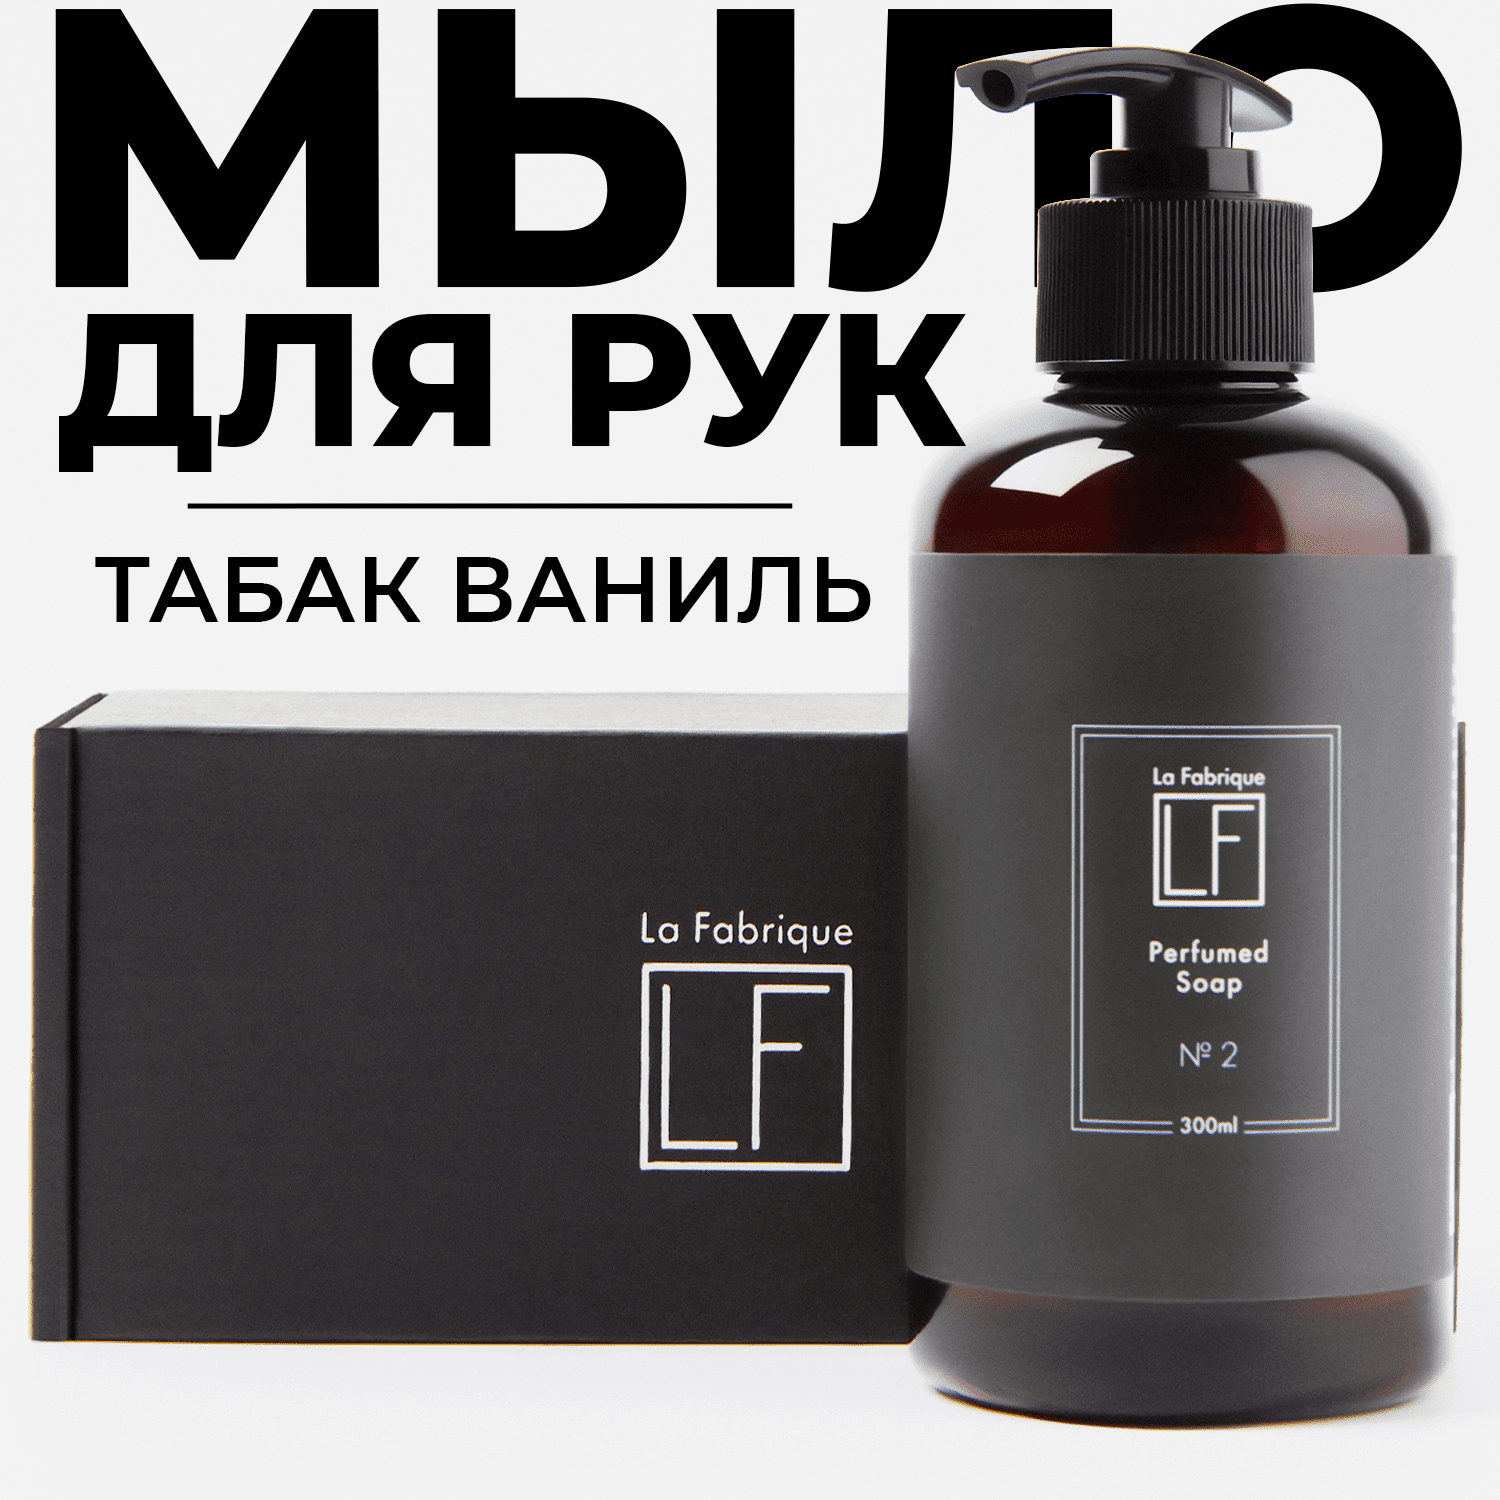 Жидкое мыло для рук La Fabrique парфюмированое с ароматом табака и ванили 300 мл - фото 1